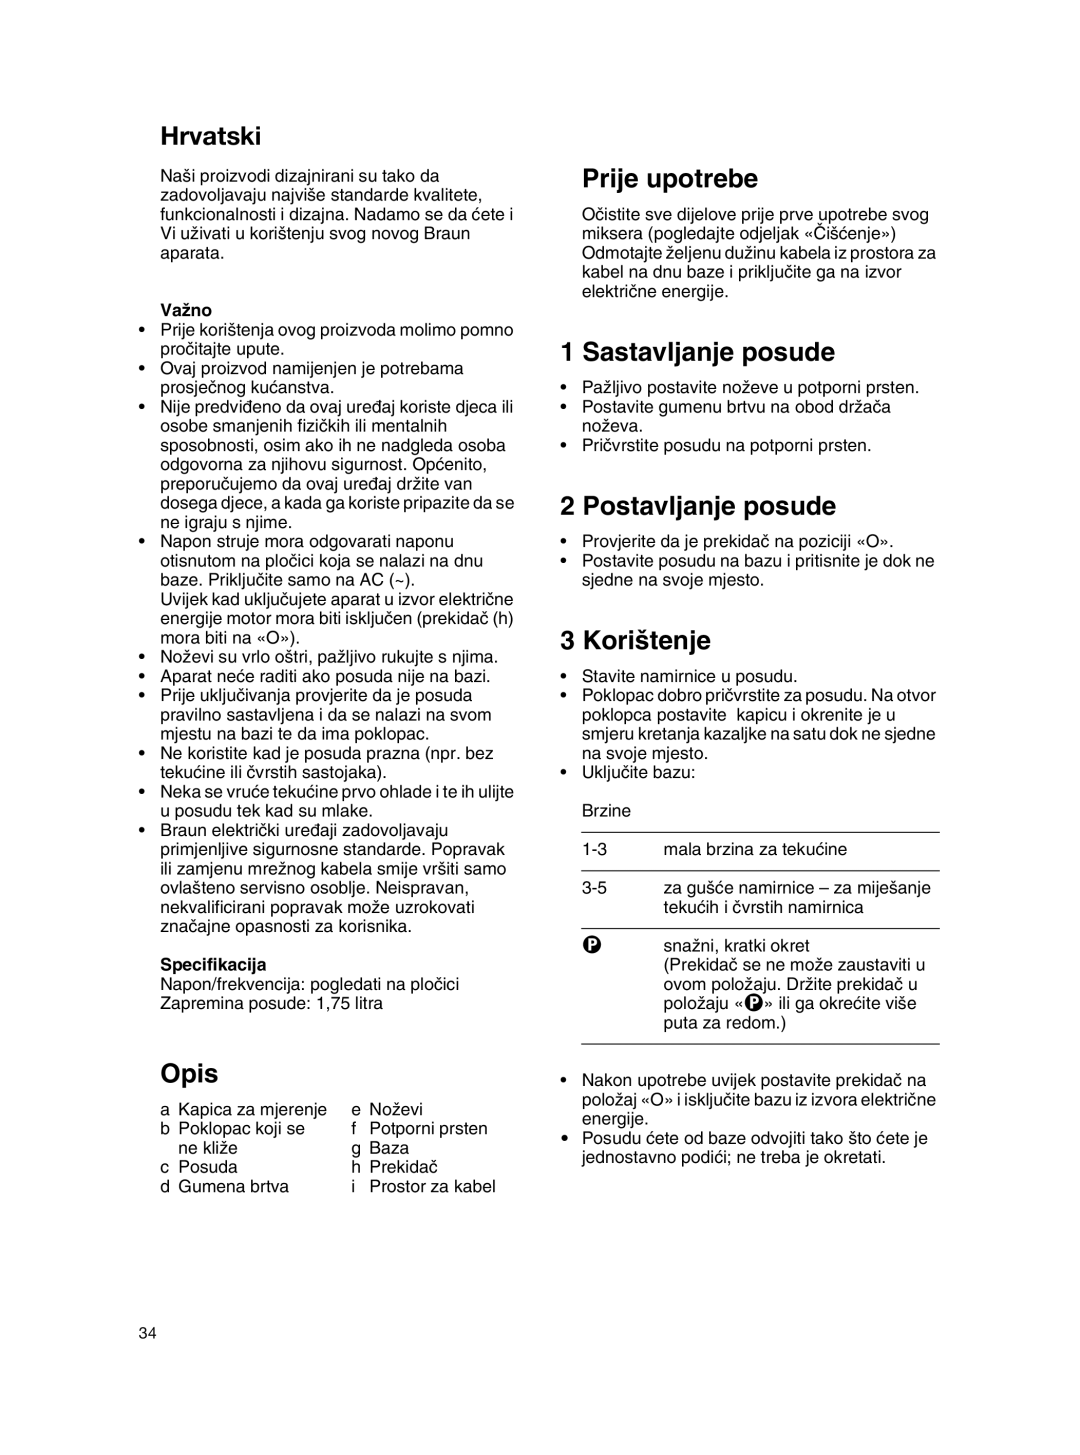 Braun MX 2050 BLACK manual Hrvatski, Opis, Prije upotrebe, Sastavljanje posude, Postavljanje posude, Kori‰tenje, VaÏno 